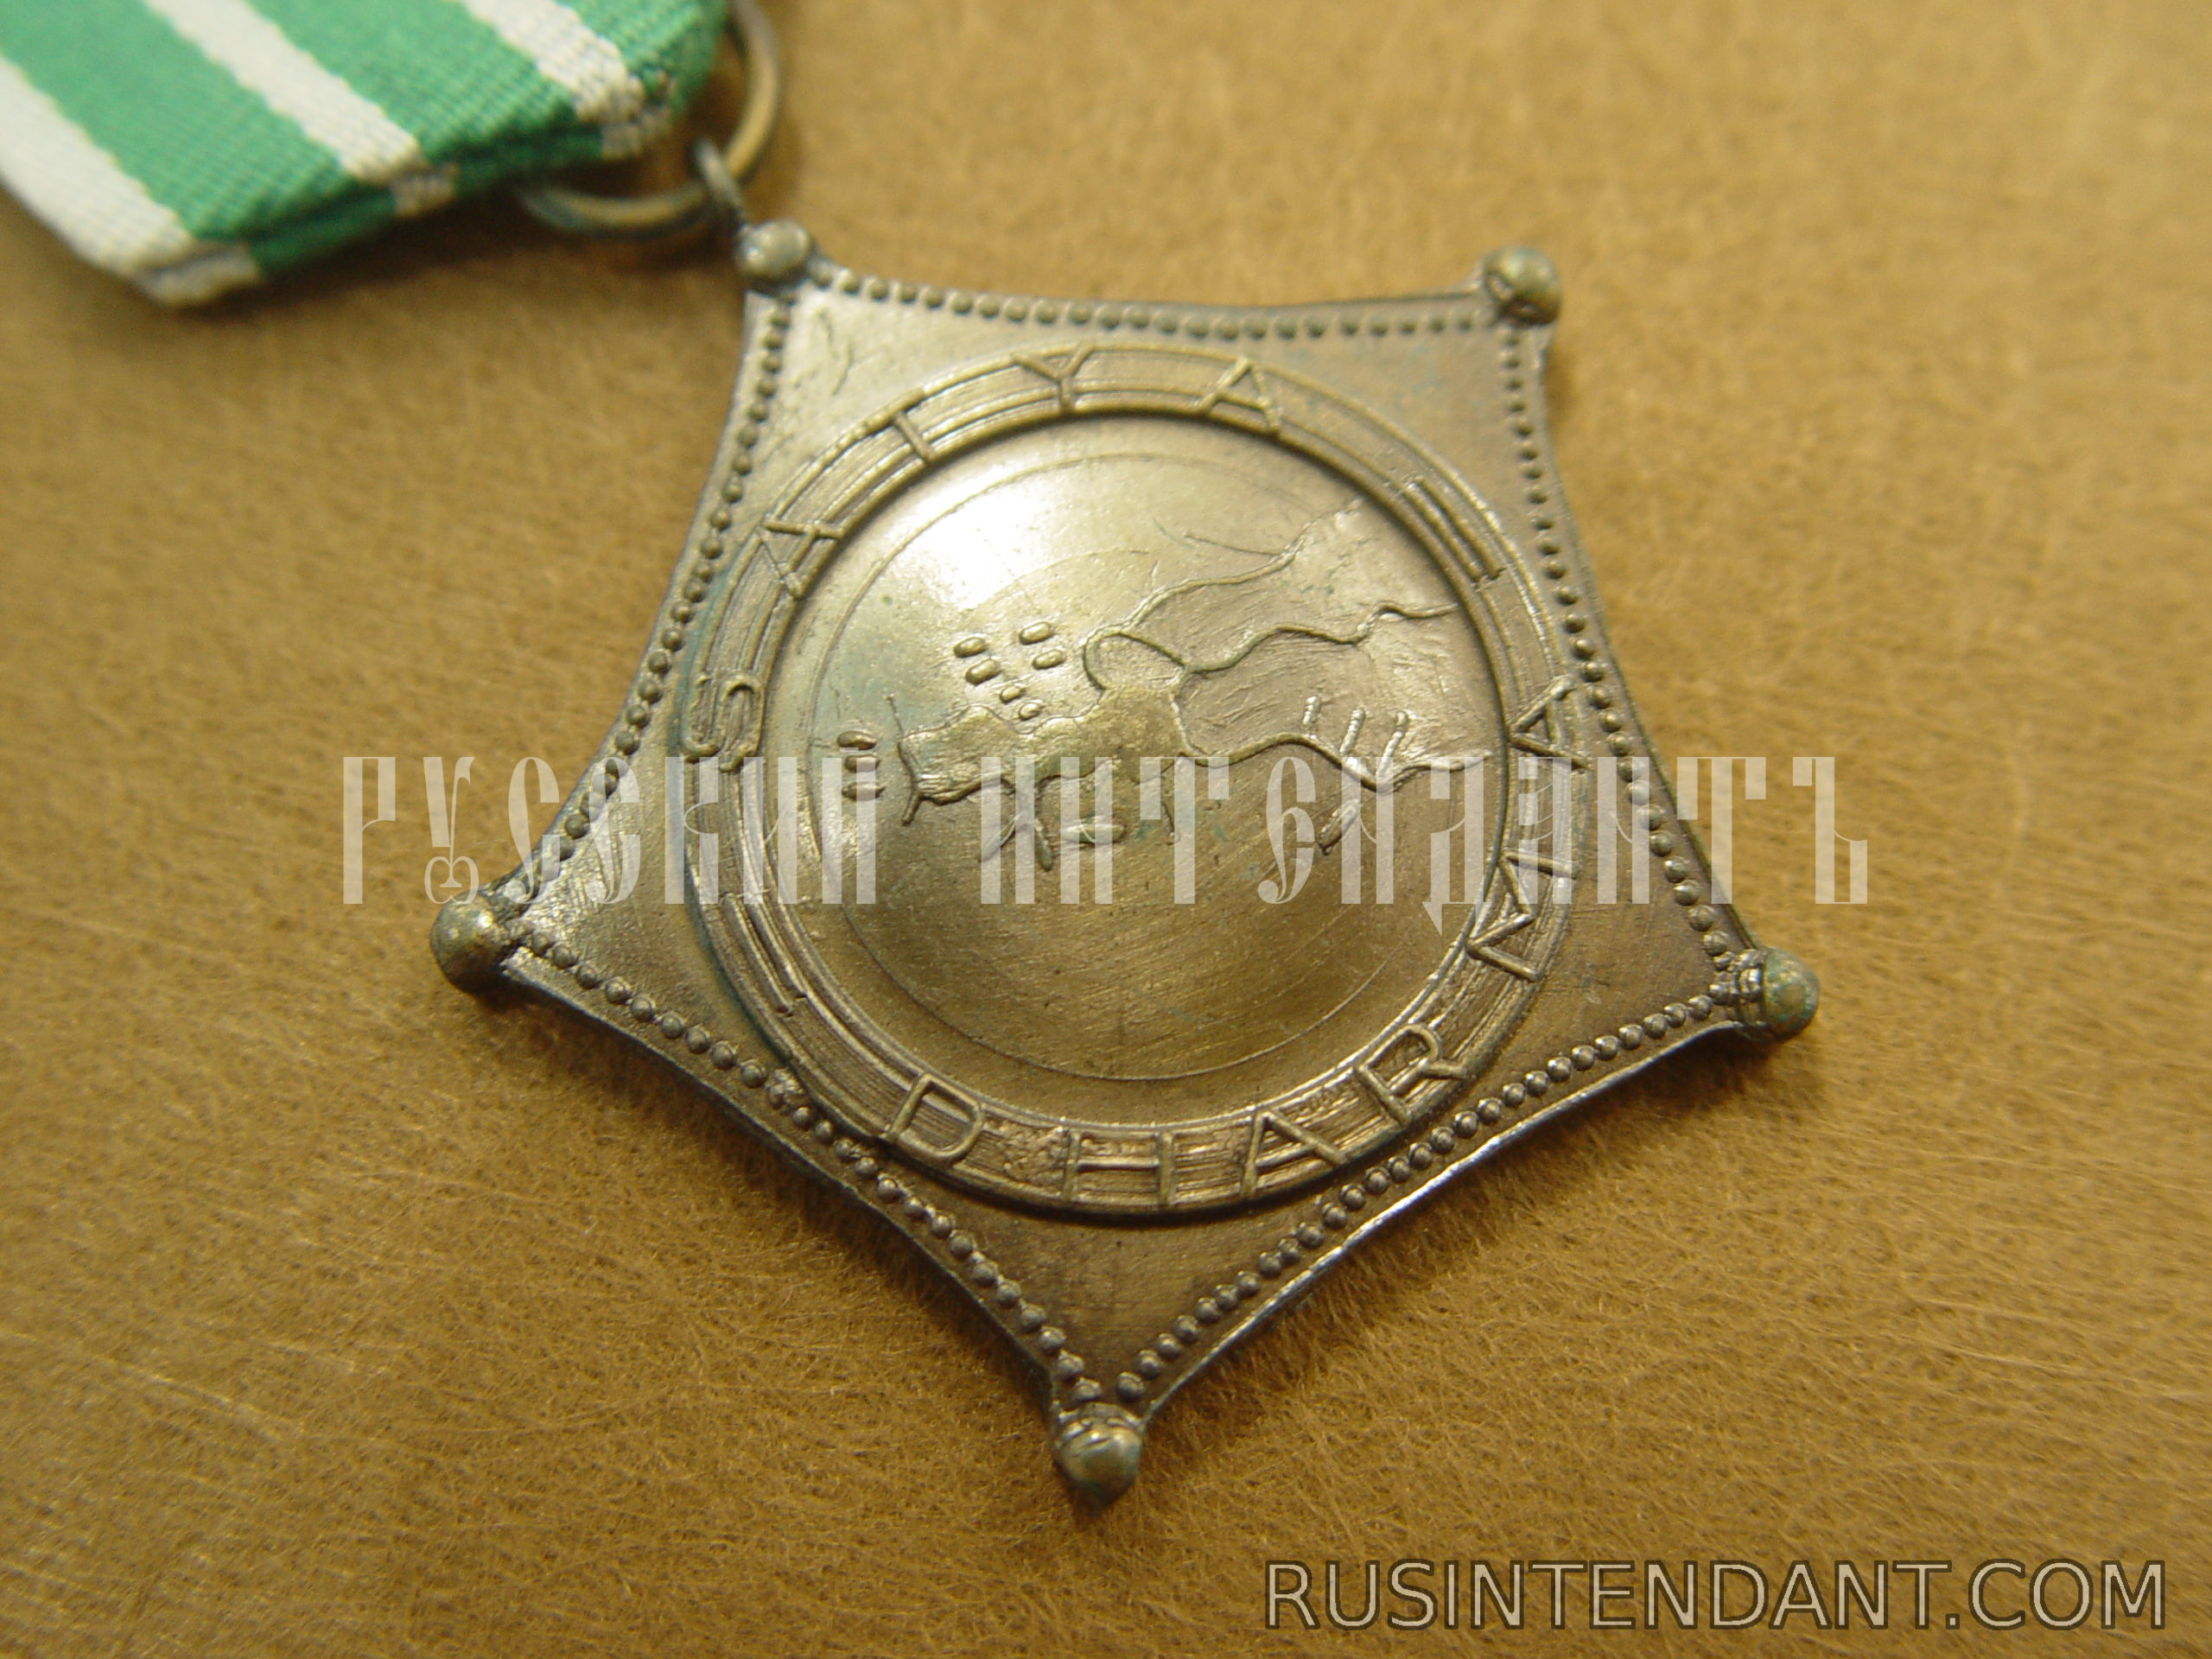 Фото 2: Военная медаль "За операцию Ириан-Джая" 